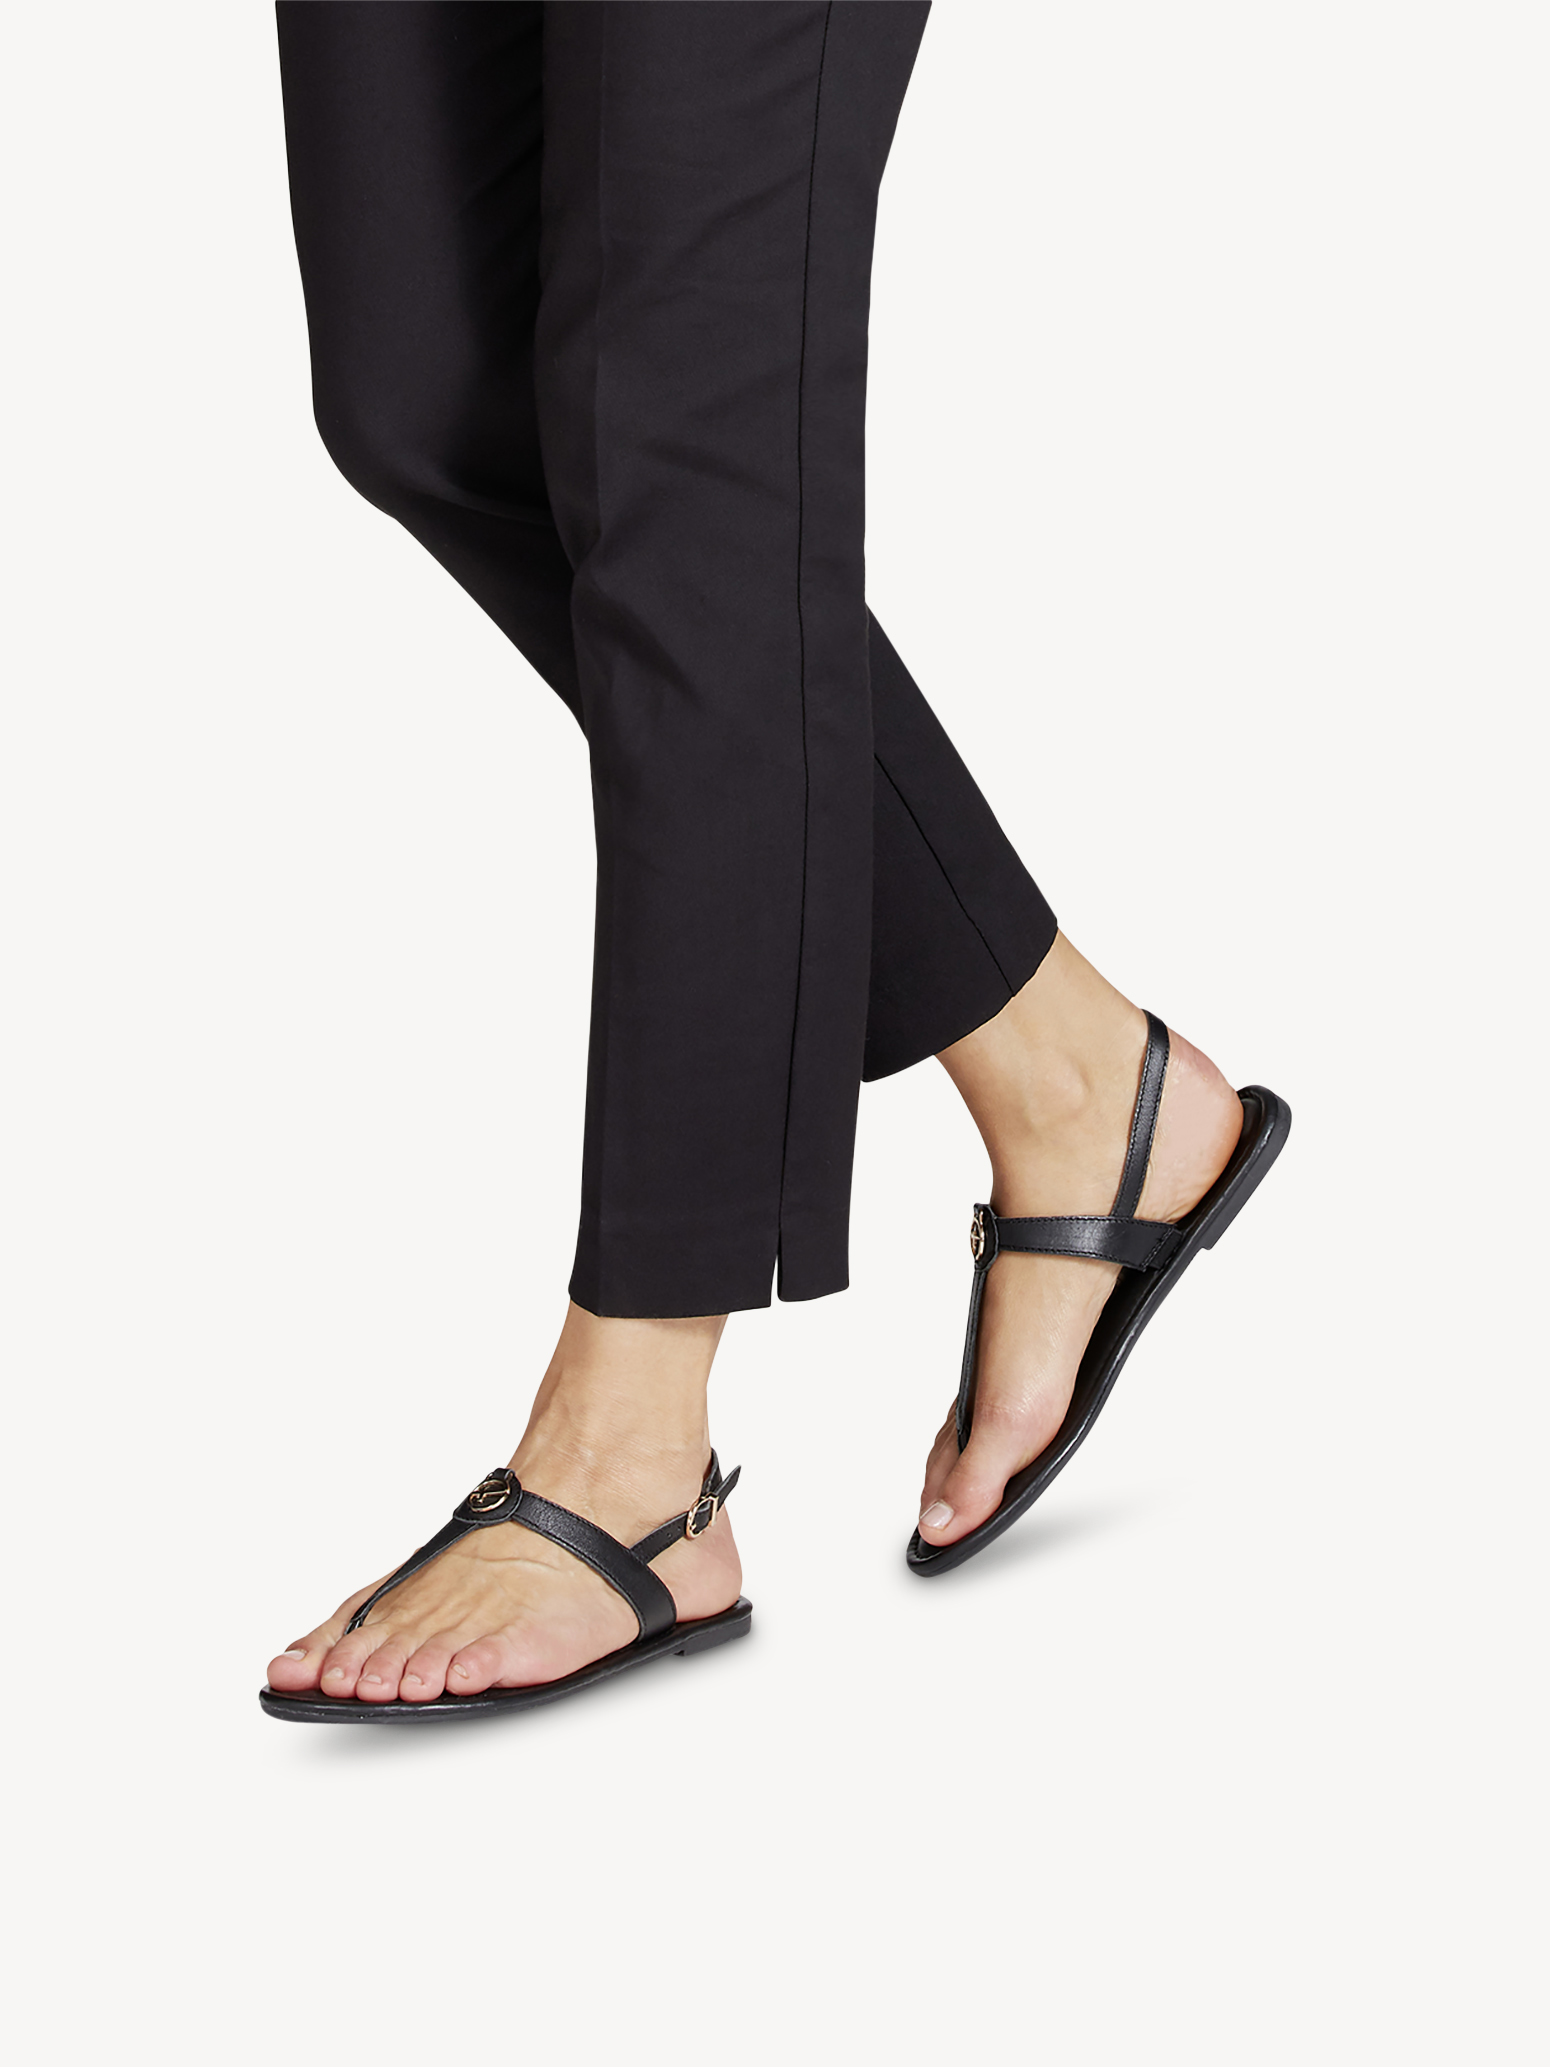 Туфли летние открытые жен. (черный) - изображение №1